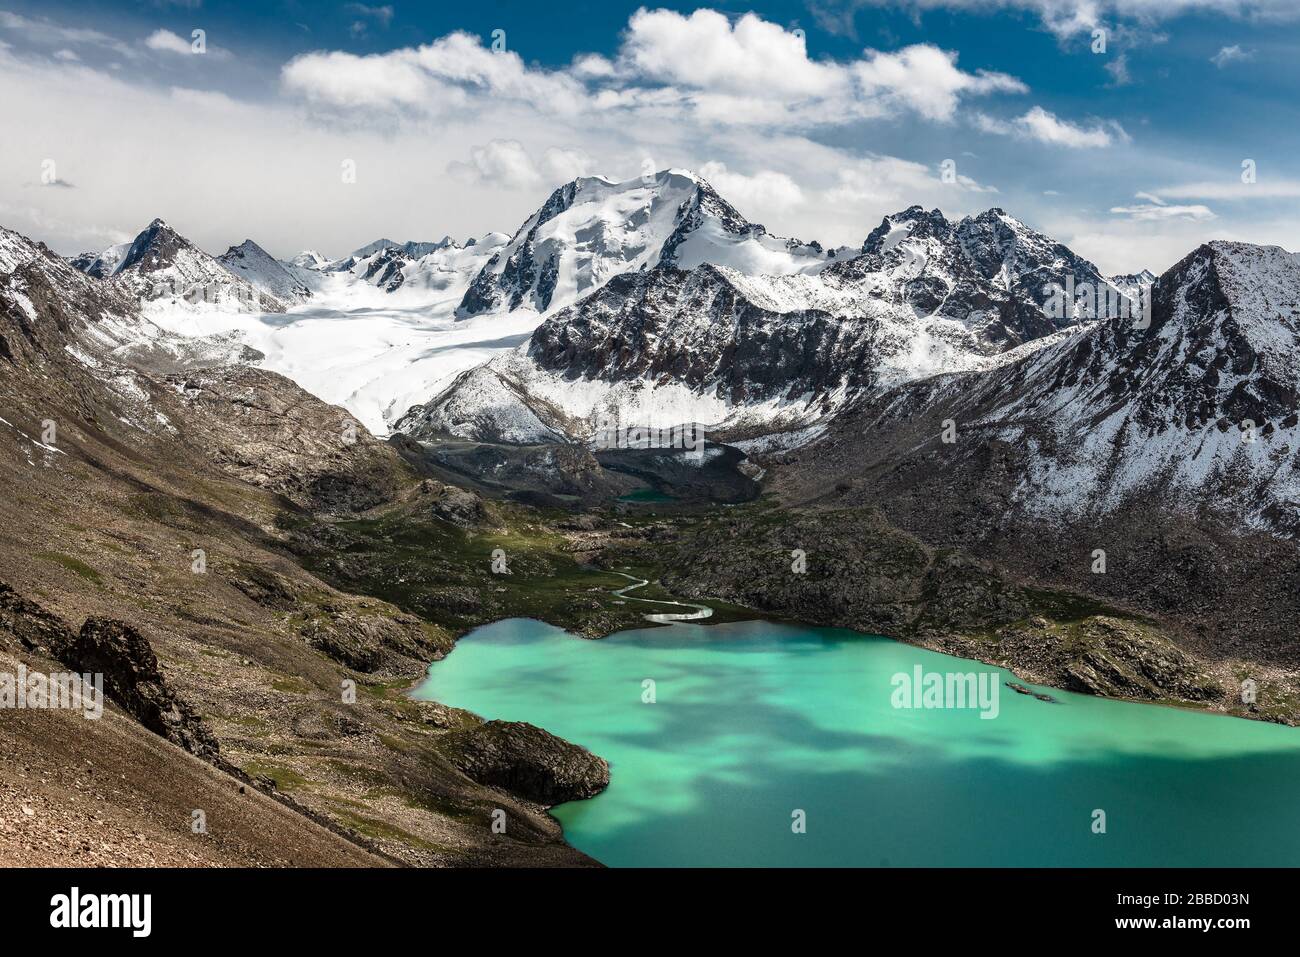 Landschaft zum Ala Kul See. Der Ala Kul Lake Trail am Terskey Alatau Gebirge in den Tian Shan Bergen. Kirgisistan, Zentralasien. Stockfoto